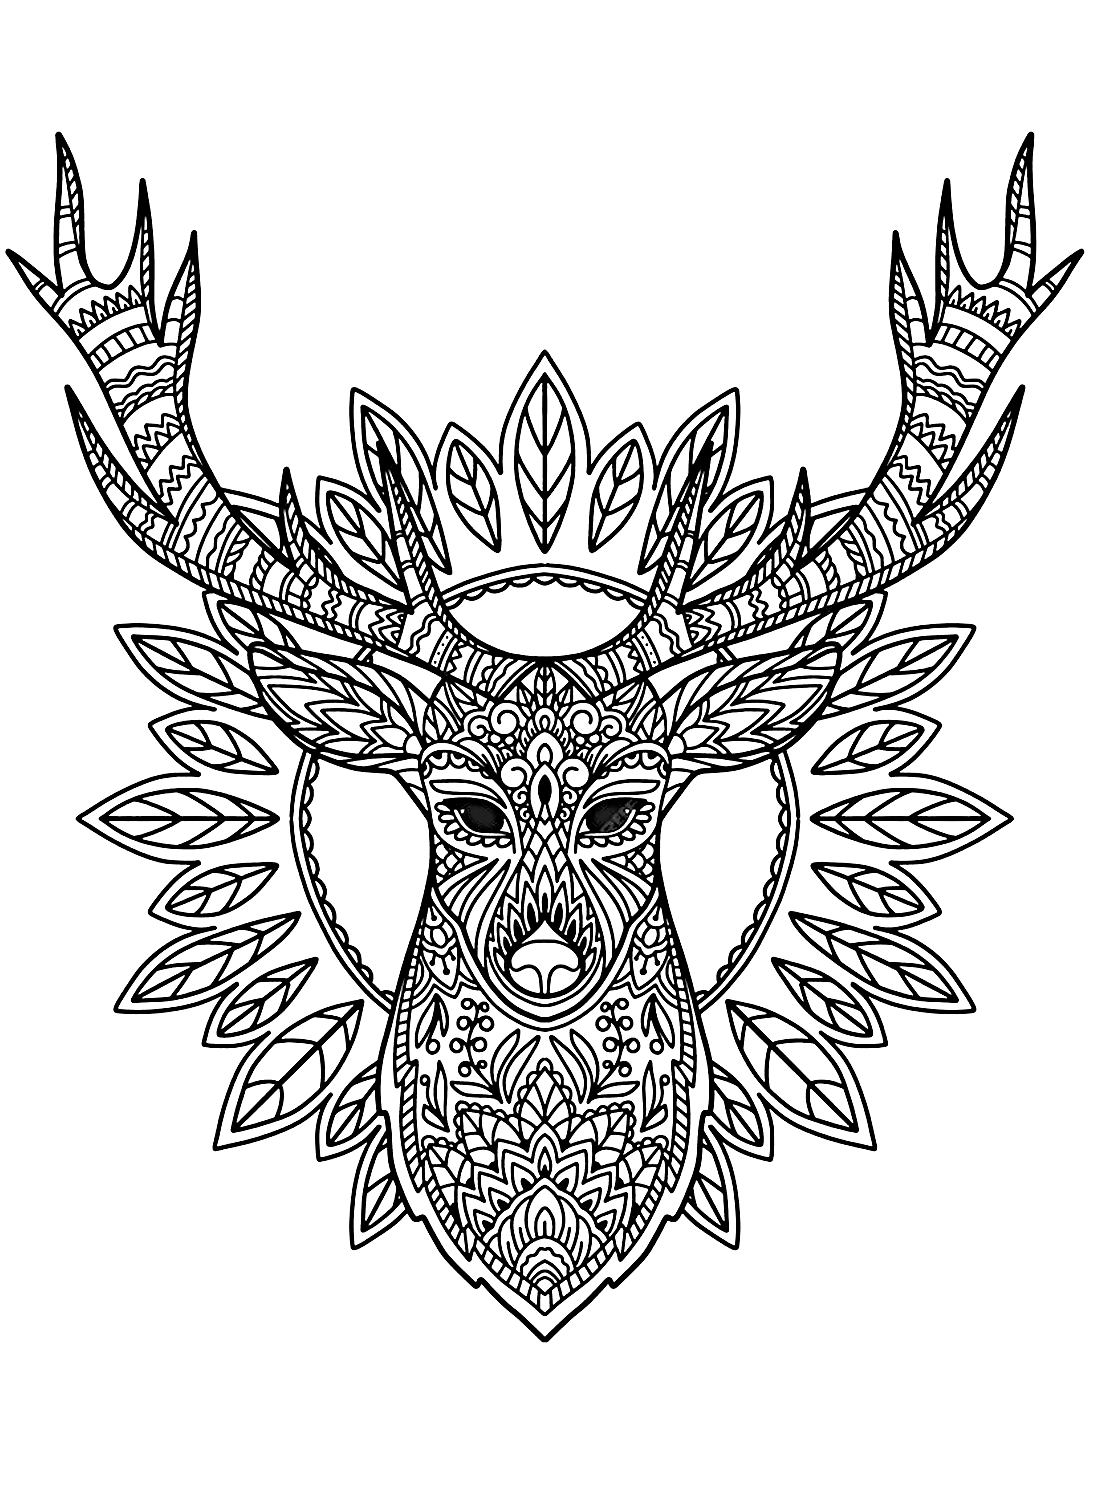 Imagem de uma cabeça de veado de Deer